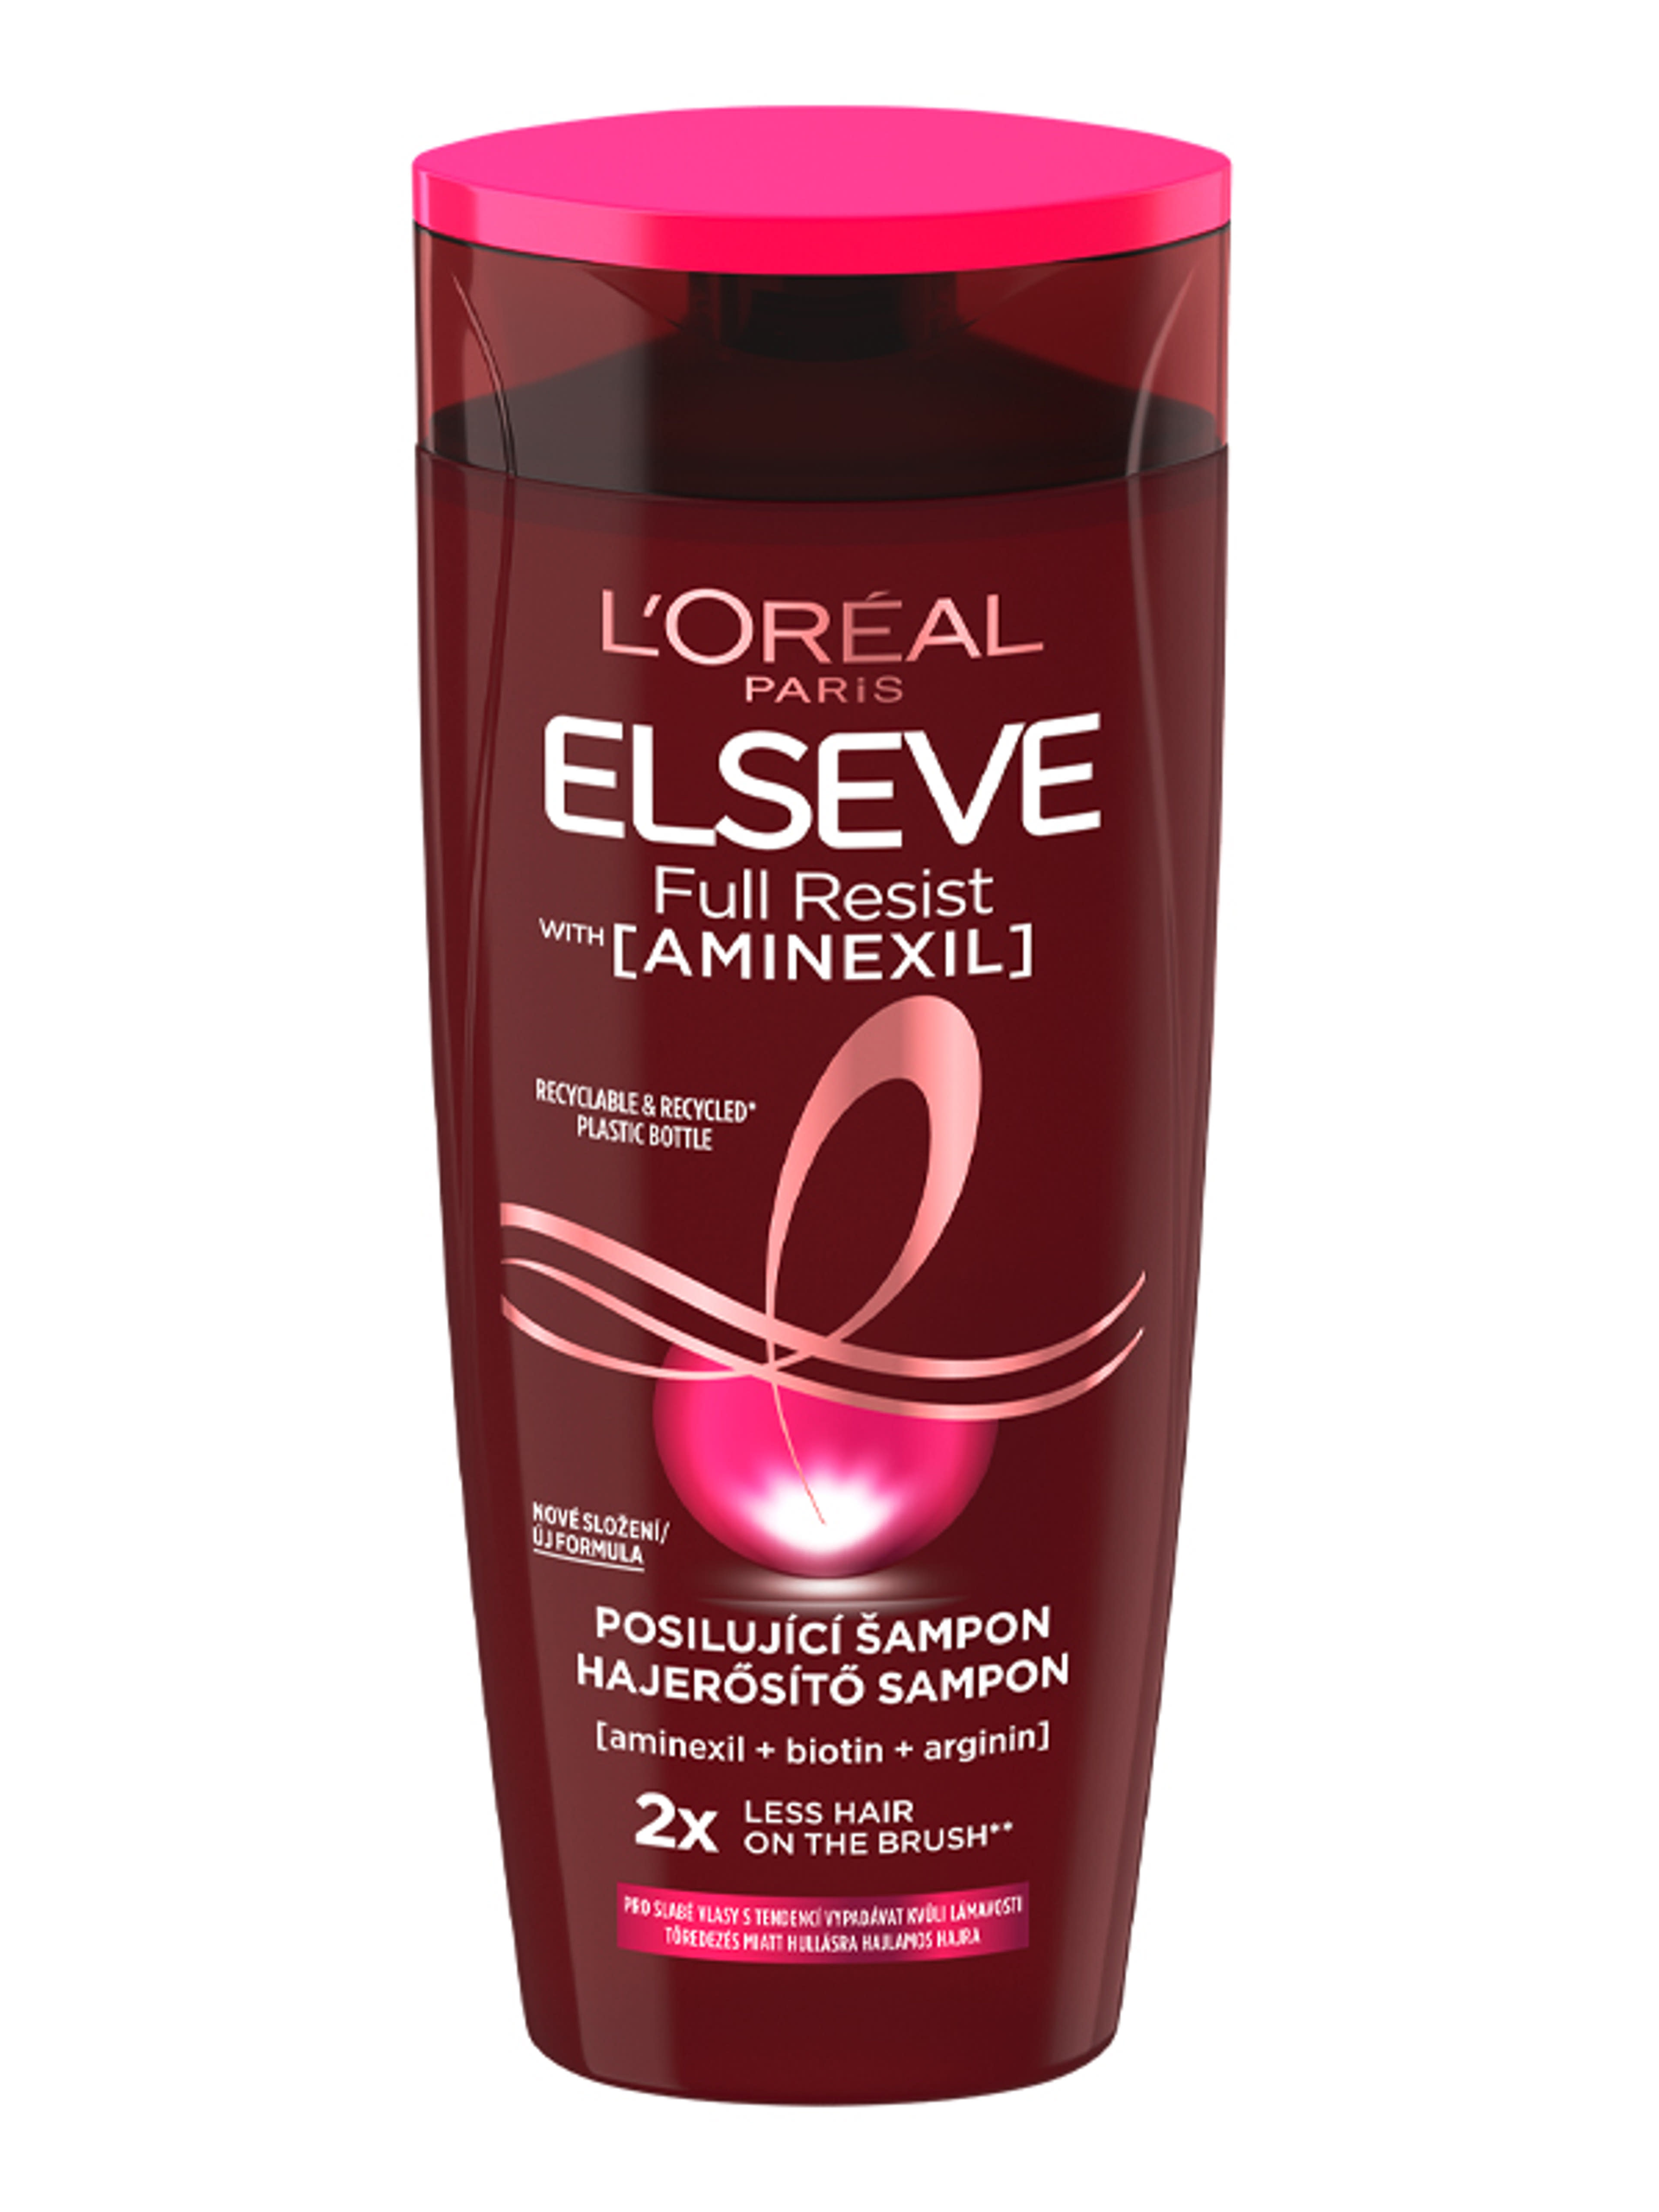 L'Oréal Paris Elseve Full Resist hajerősítő sampon - 250 ml-3